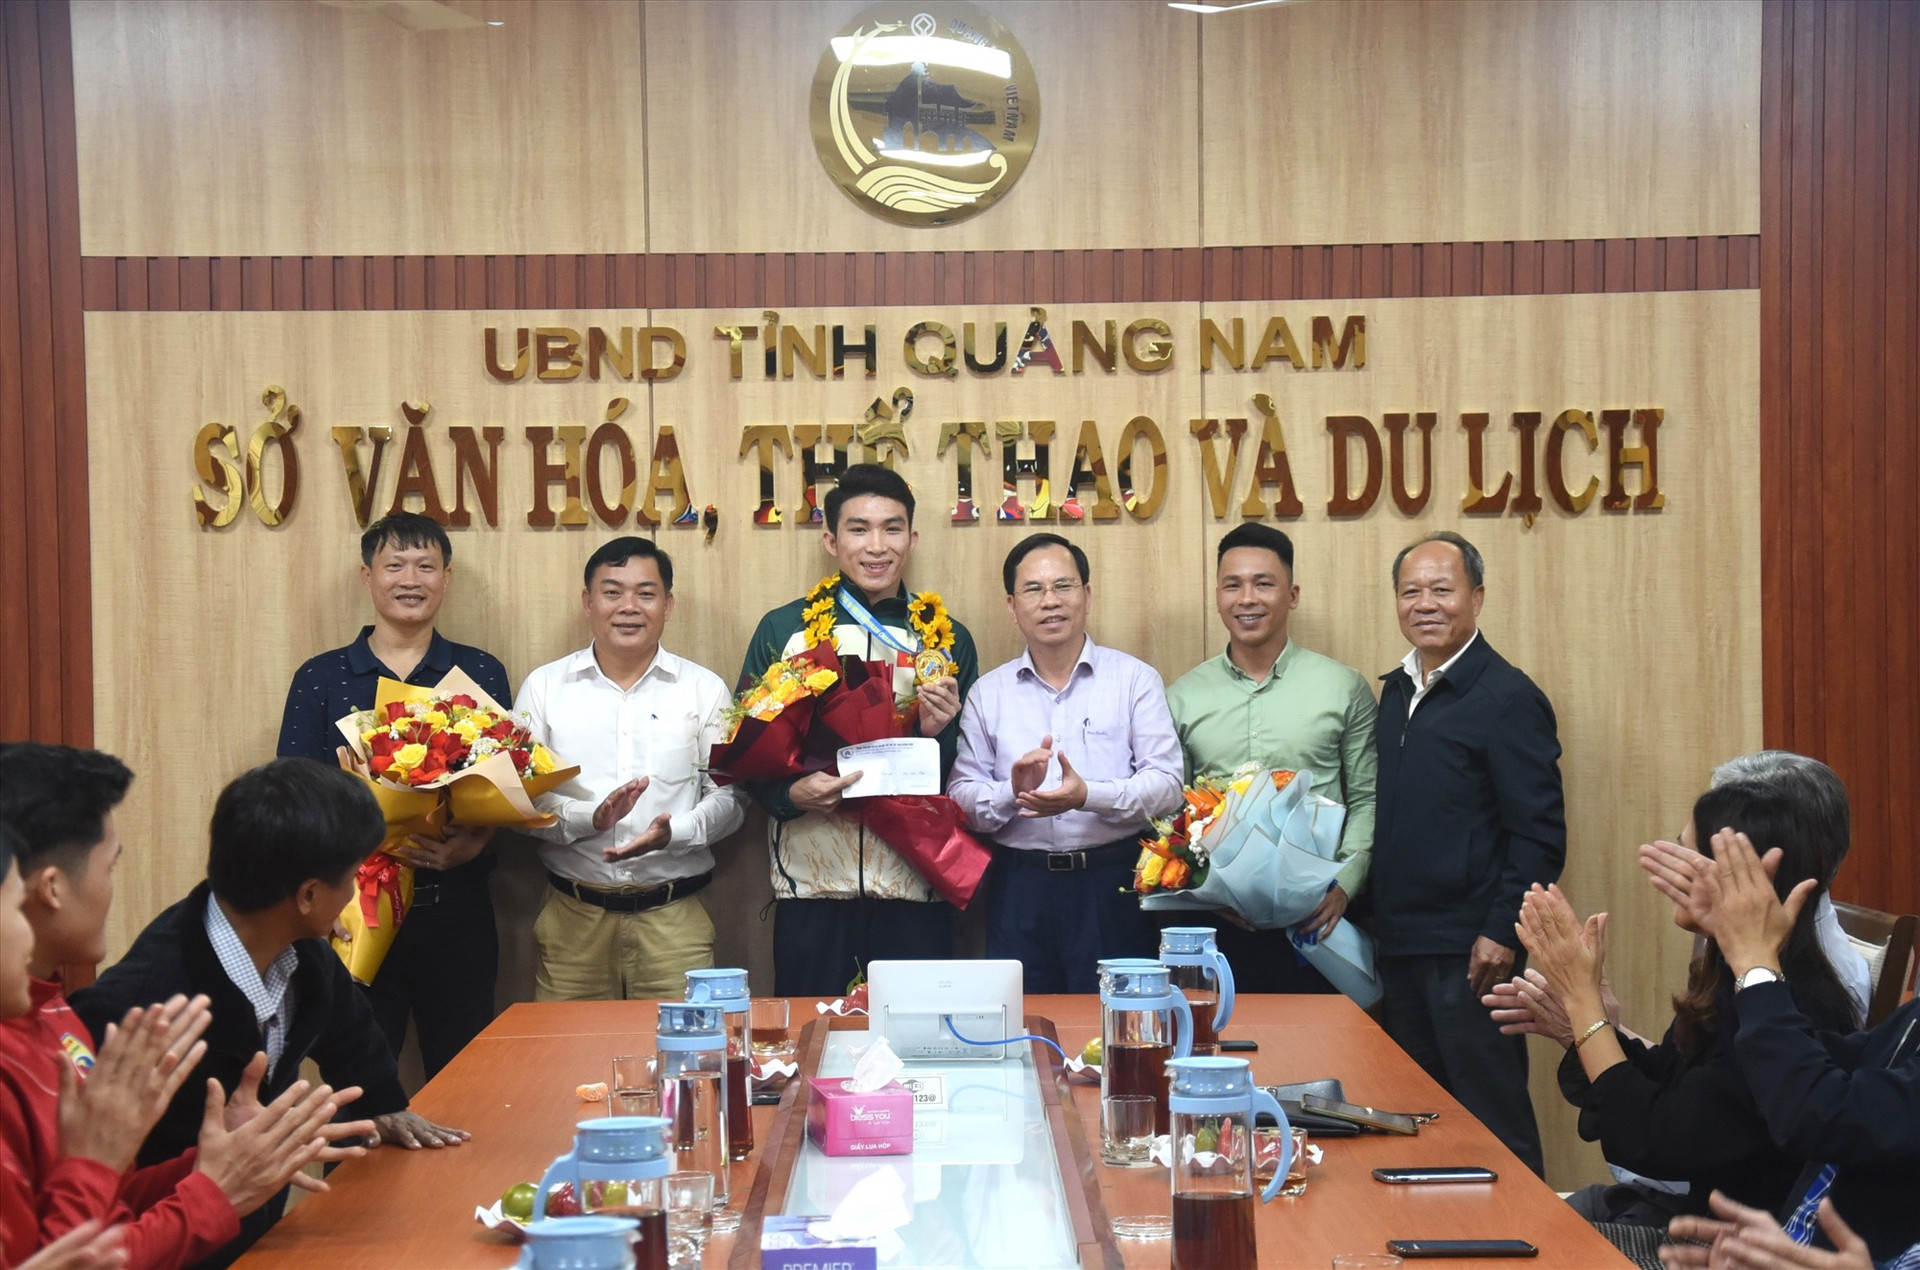 Lãnh đạo Sở VH-TT&DL, Trung tâm Đào tạo thi đấu TD-TT Quảng Nam tặng hoa cho huấn luyện viên và thưởng nóng cho vận động viên Bùi Xuân Nhật. Ảnh: T.V